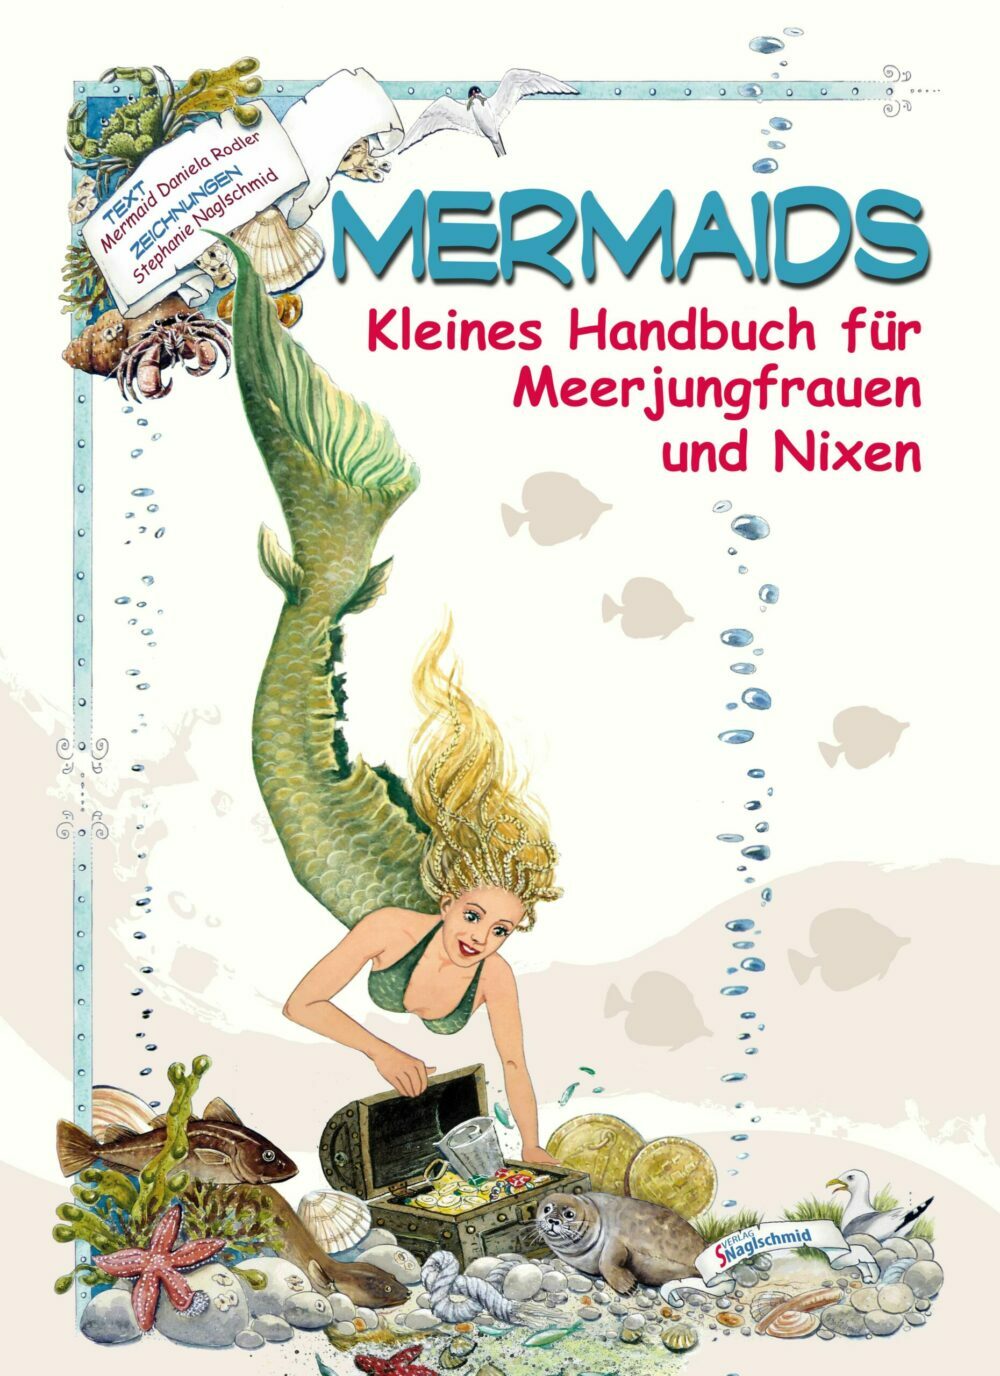 Mermaids - Kleines Handbuch für Meerjungfrauen und Nixen